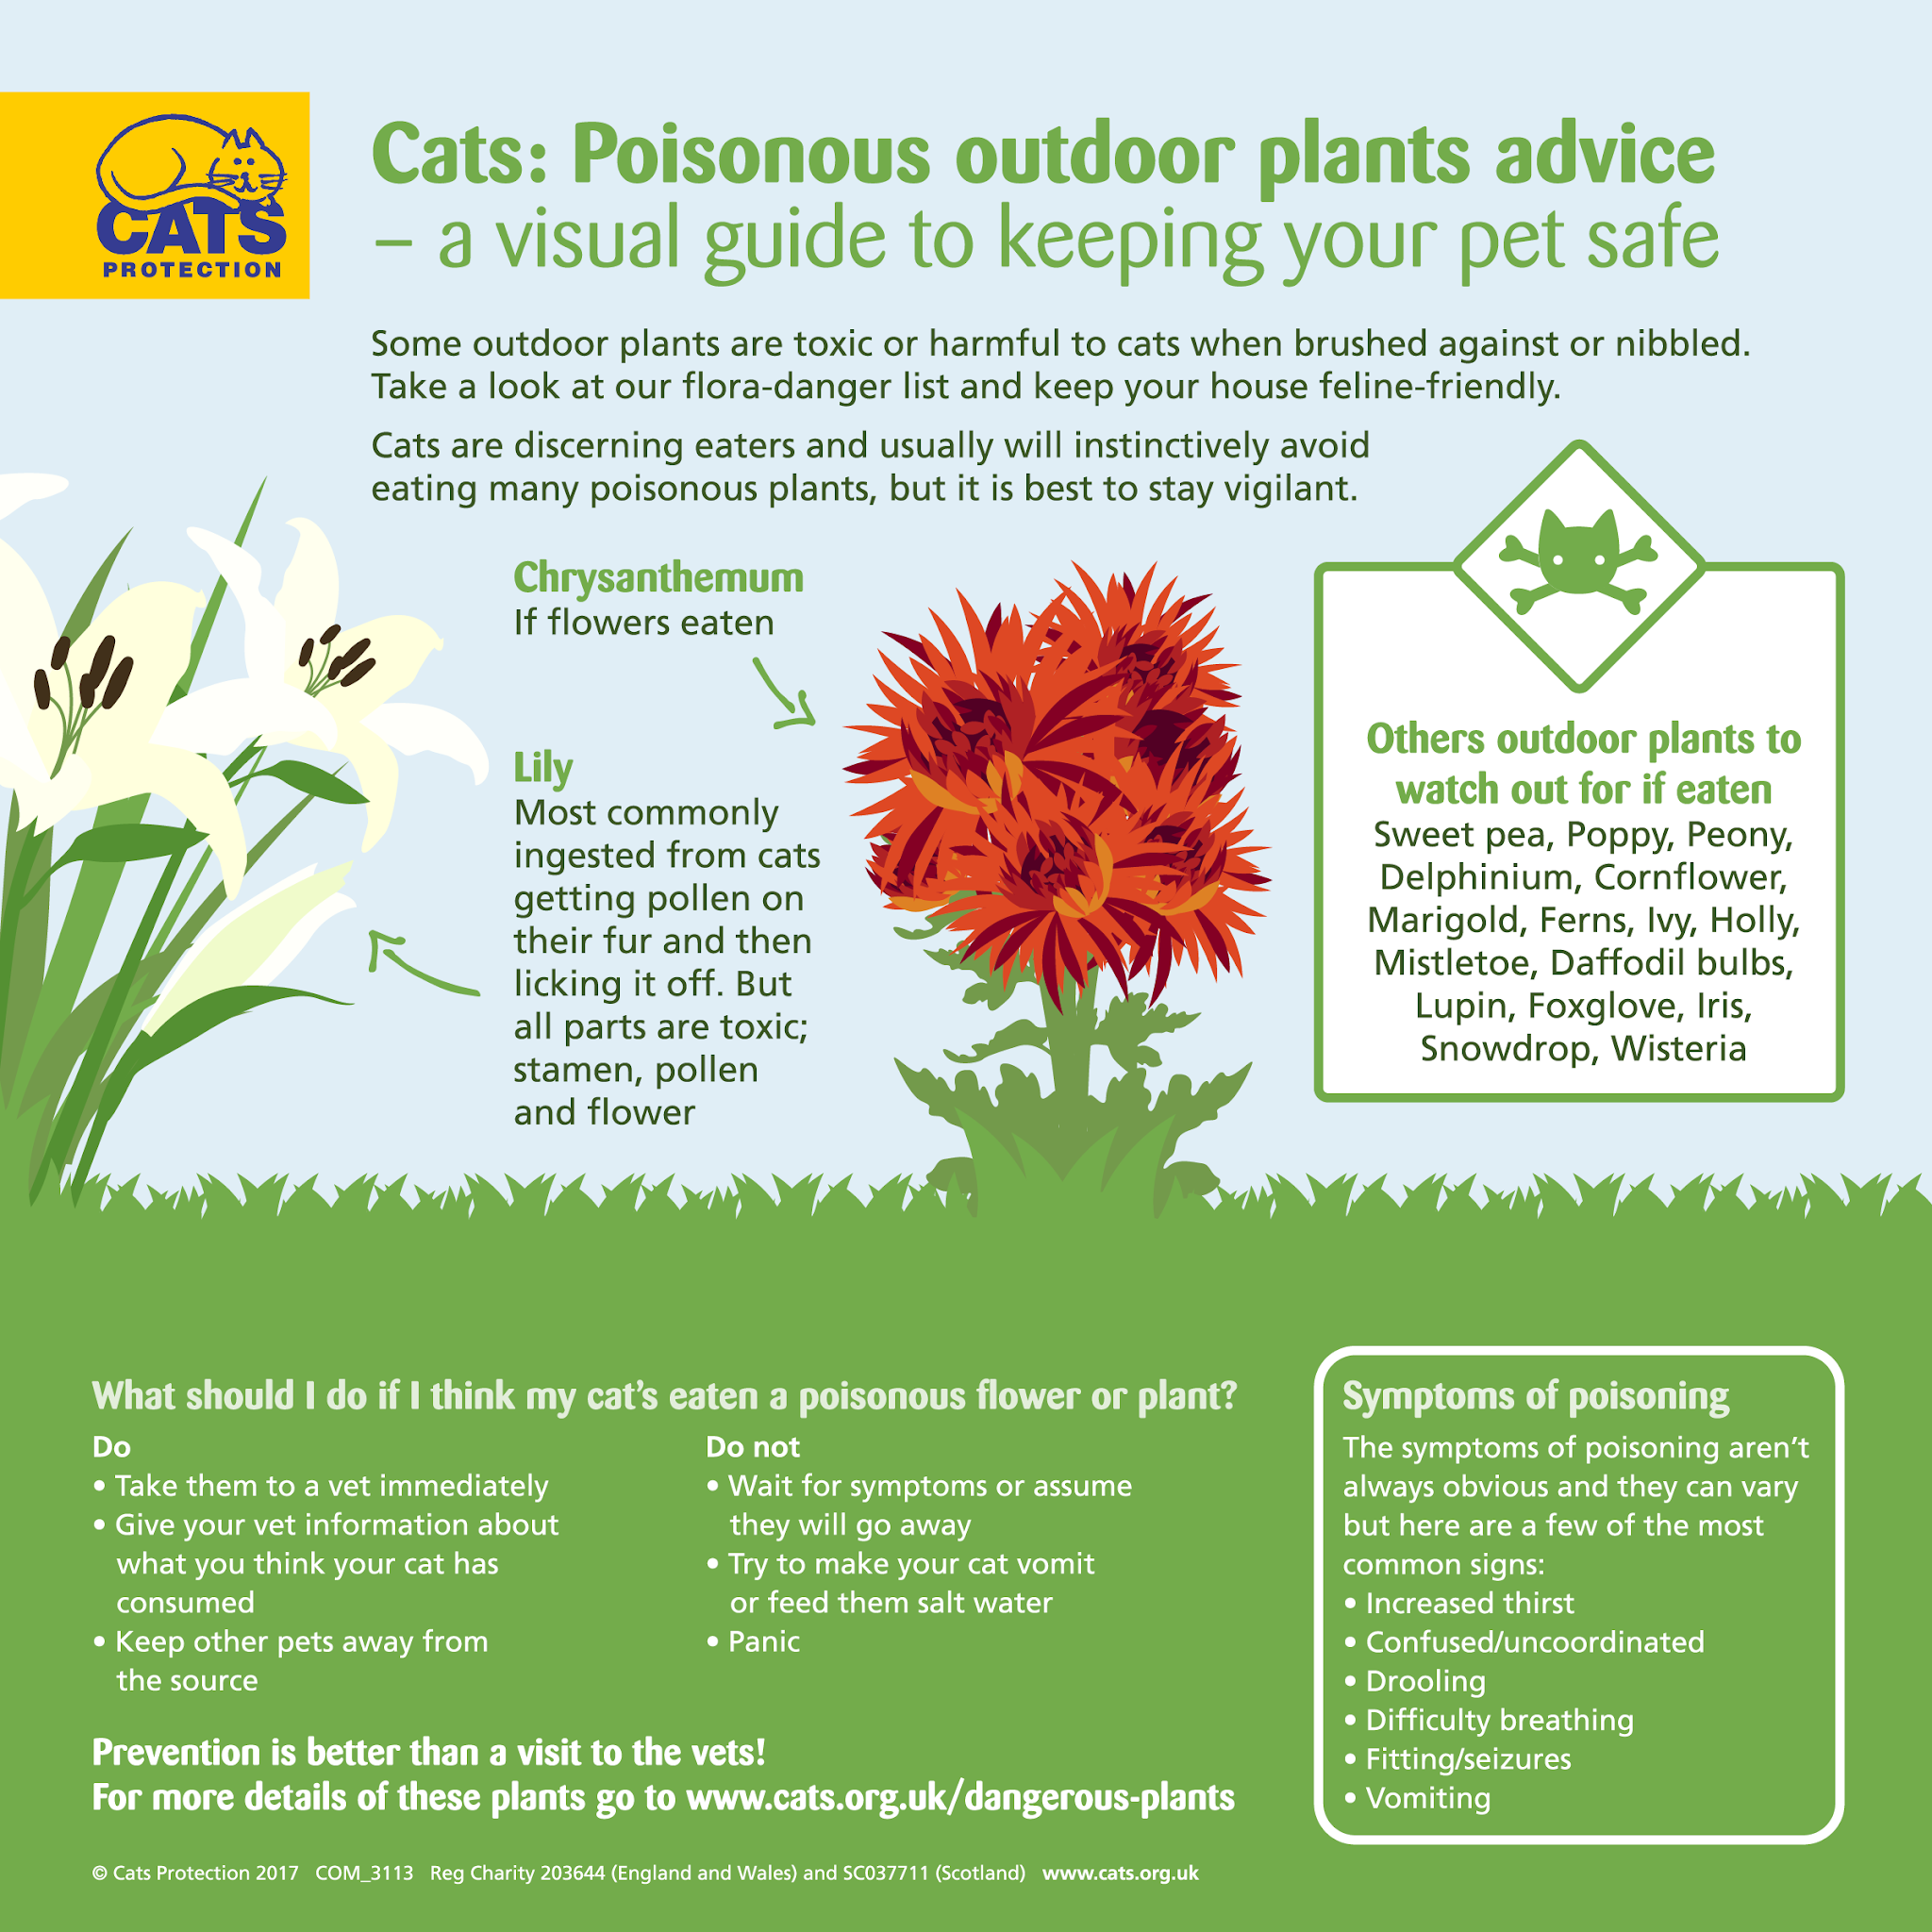 Evite plantas tóxicas e mantenha seu gato seguro.